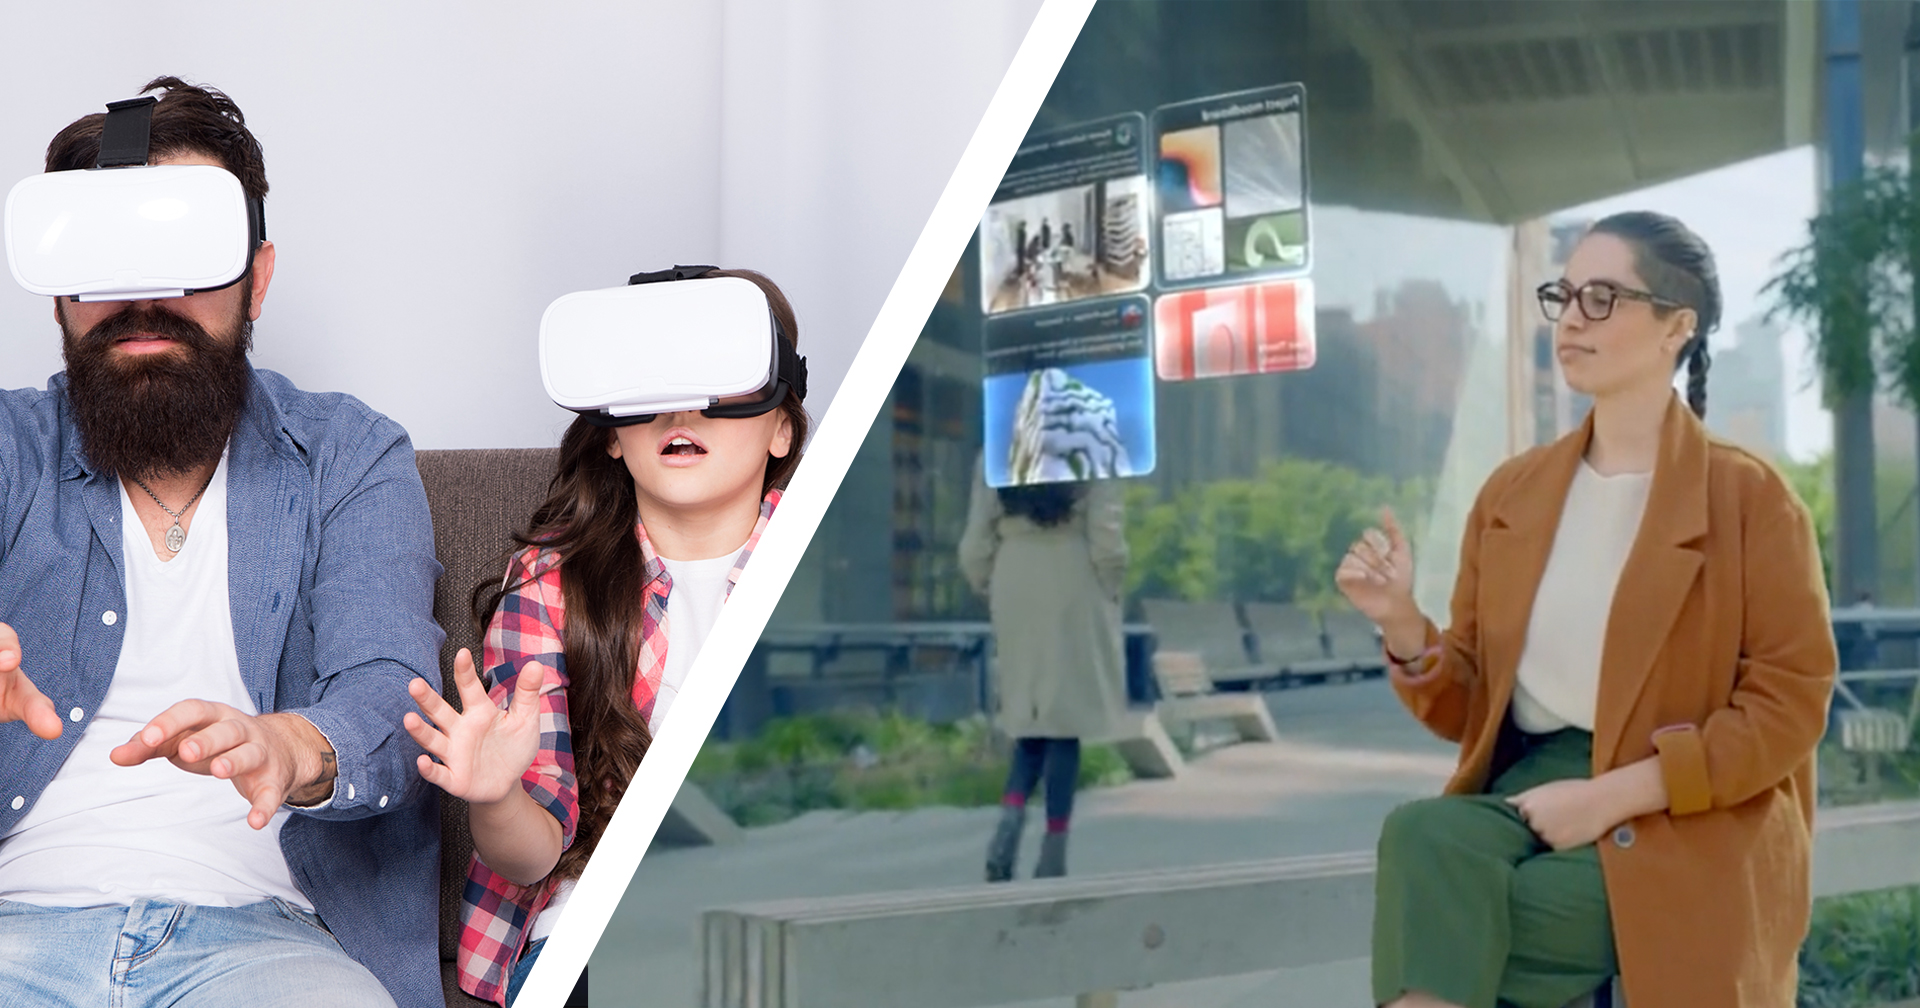 ยุค Metaverse แว่น VR จะกลายเป็นสิ่งที่ทุกคนมีติดตัวแทนสมาร์ตโฟน